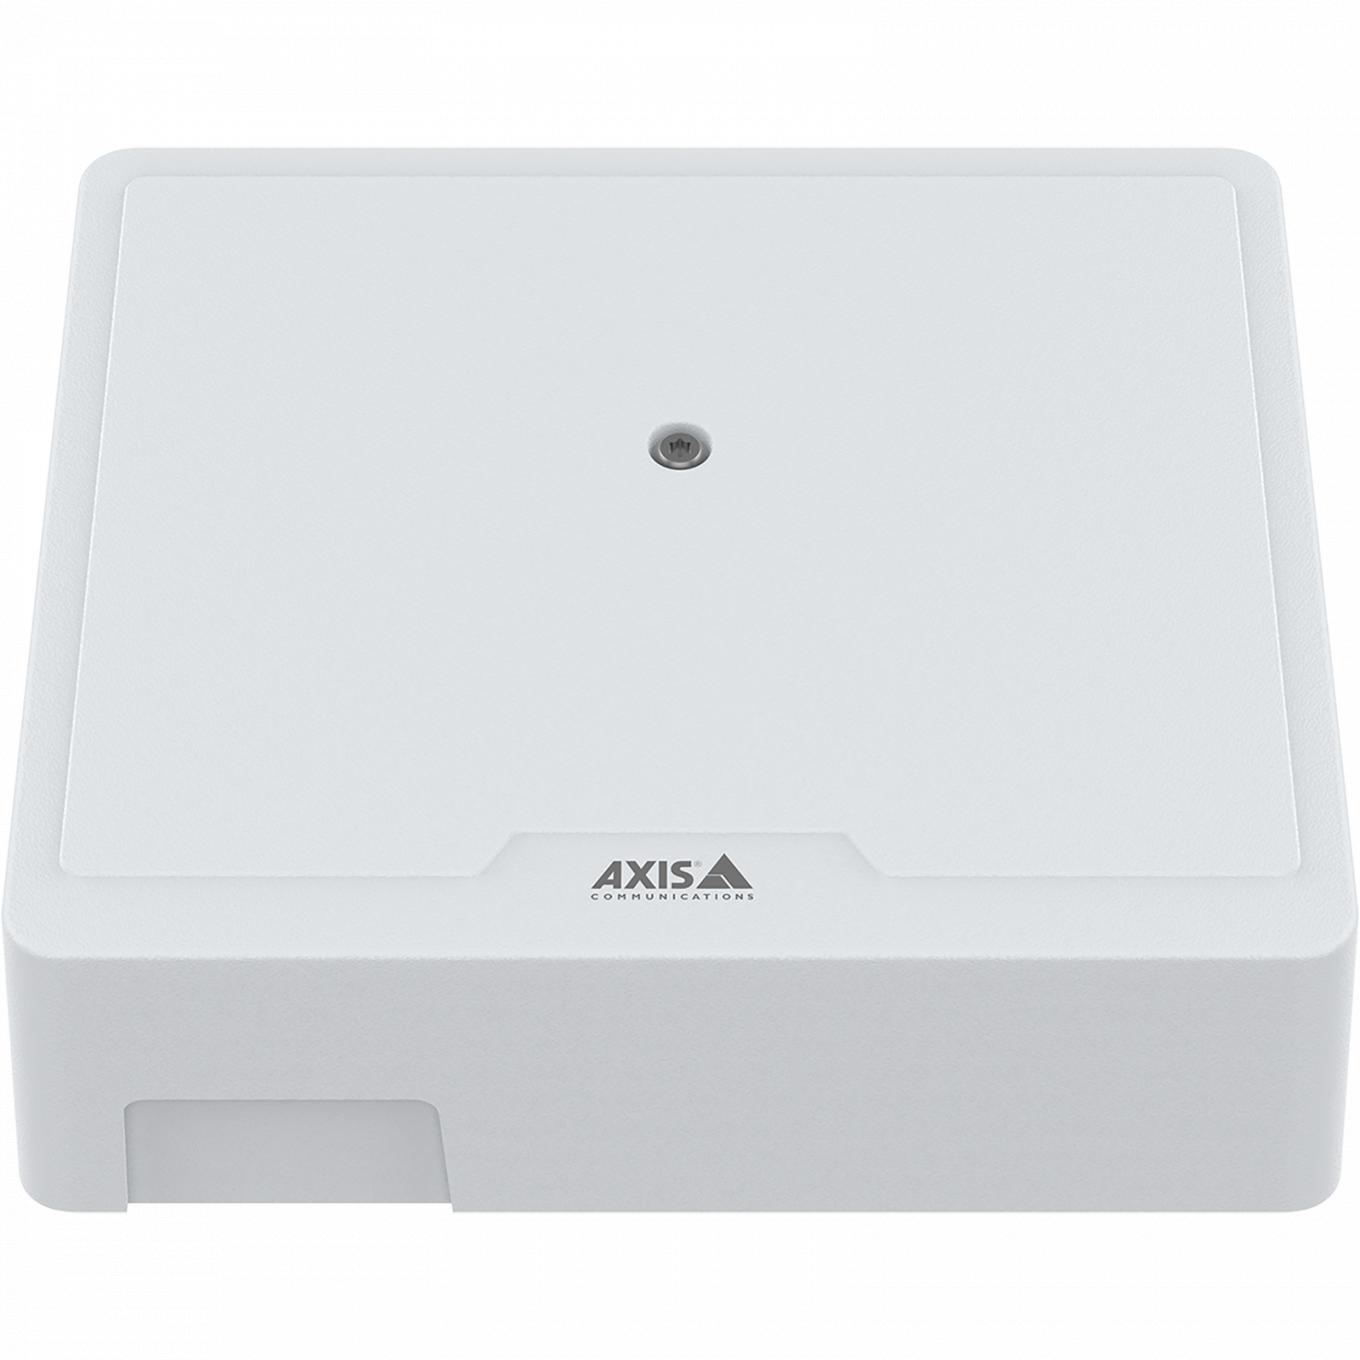 AXIS A1210 Network Door Controller, vue de face